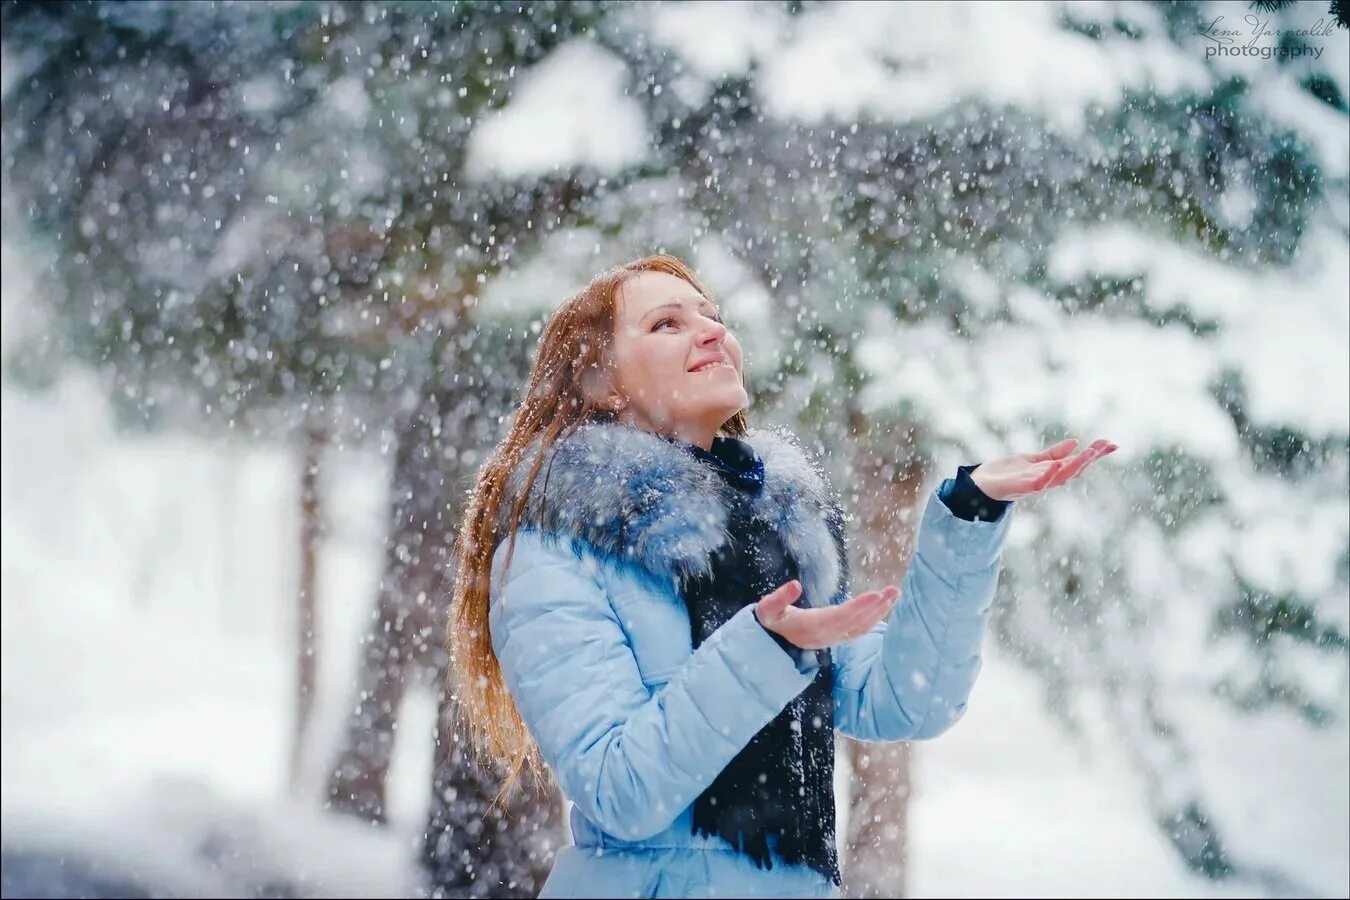 Новый все ближе. Радость зимой. Зимнее счастье. Люди зимой. Девушка в снегу.